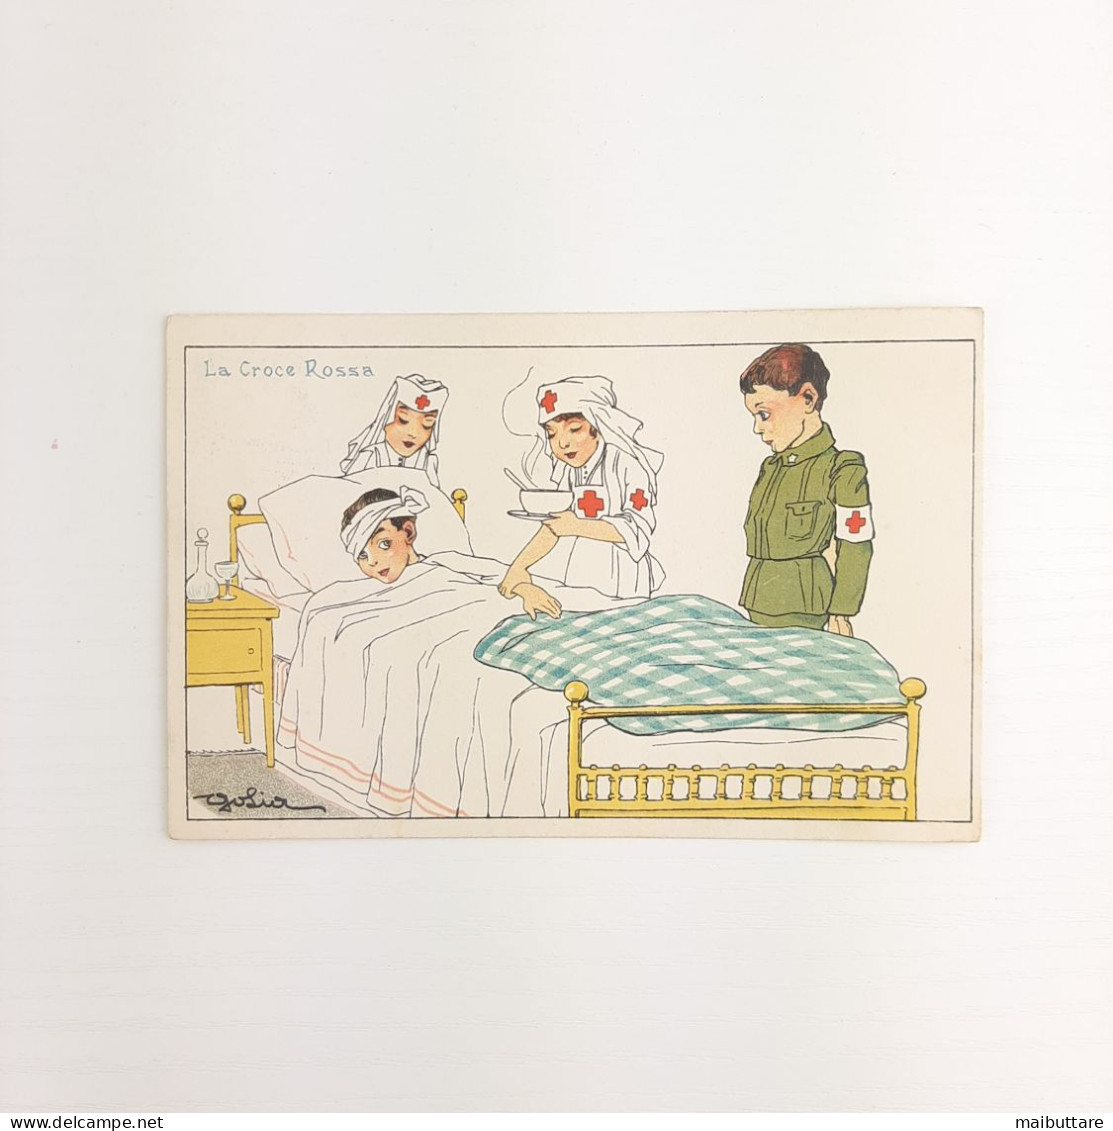 WW1 Cartolina A Colori - Illustrazione Satirica "La Croce Rossa" - Autore Golia - Guerre 1914-18